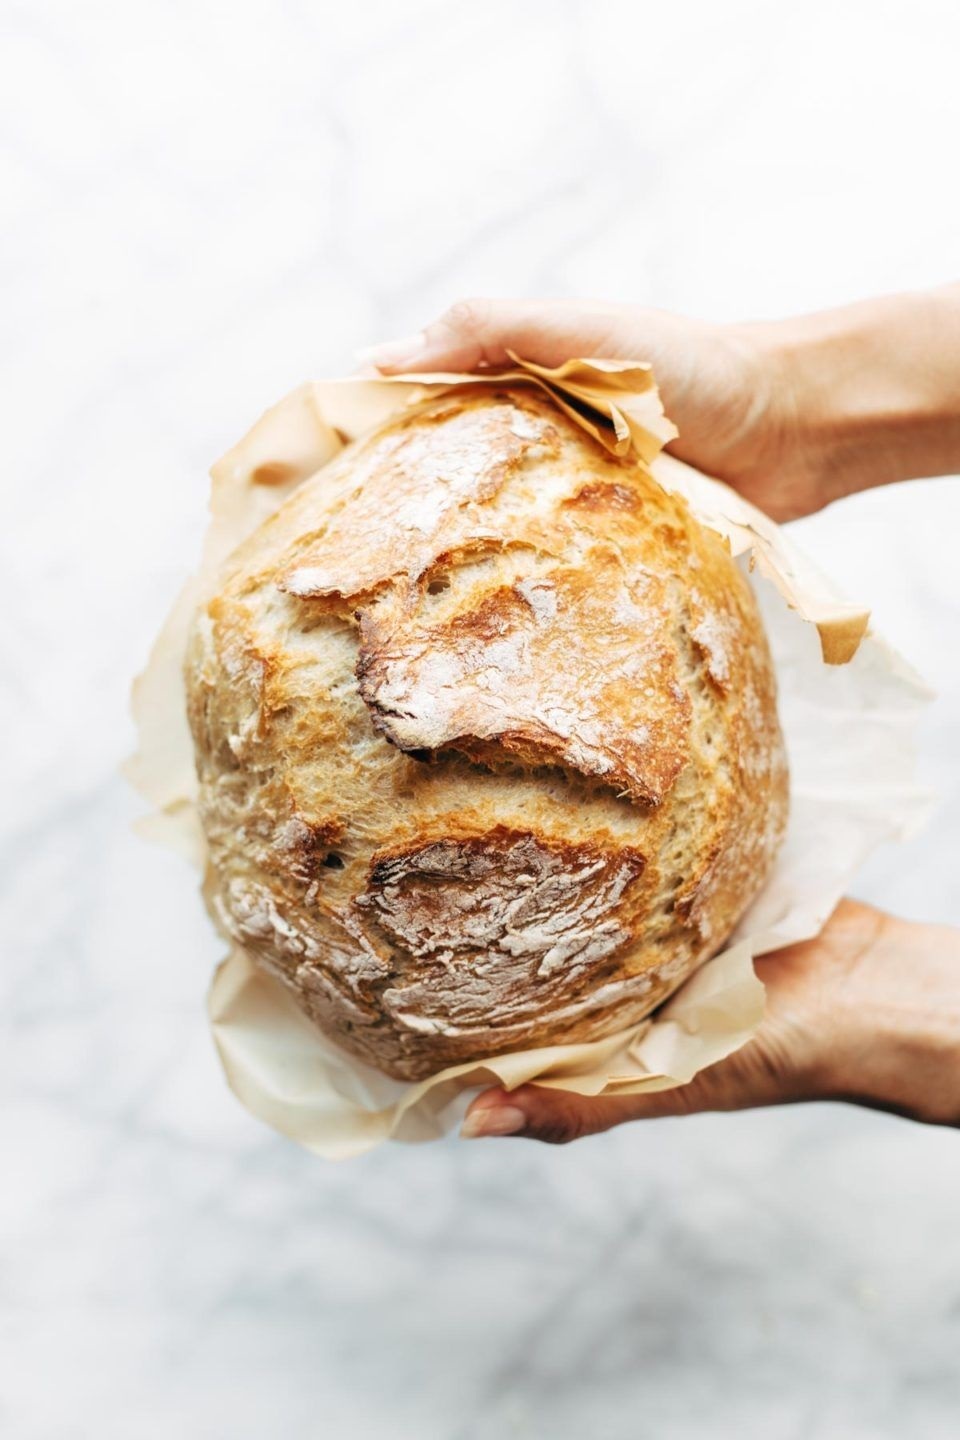 Признаки пропеченности и процесс остывания хлеба